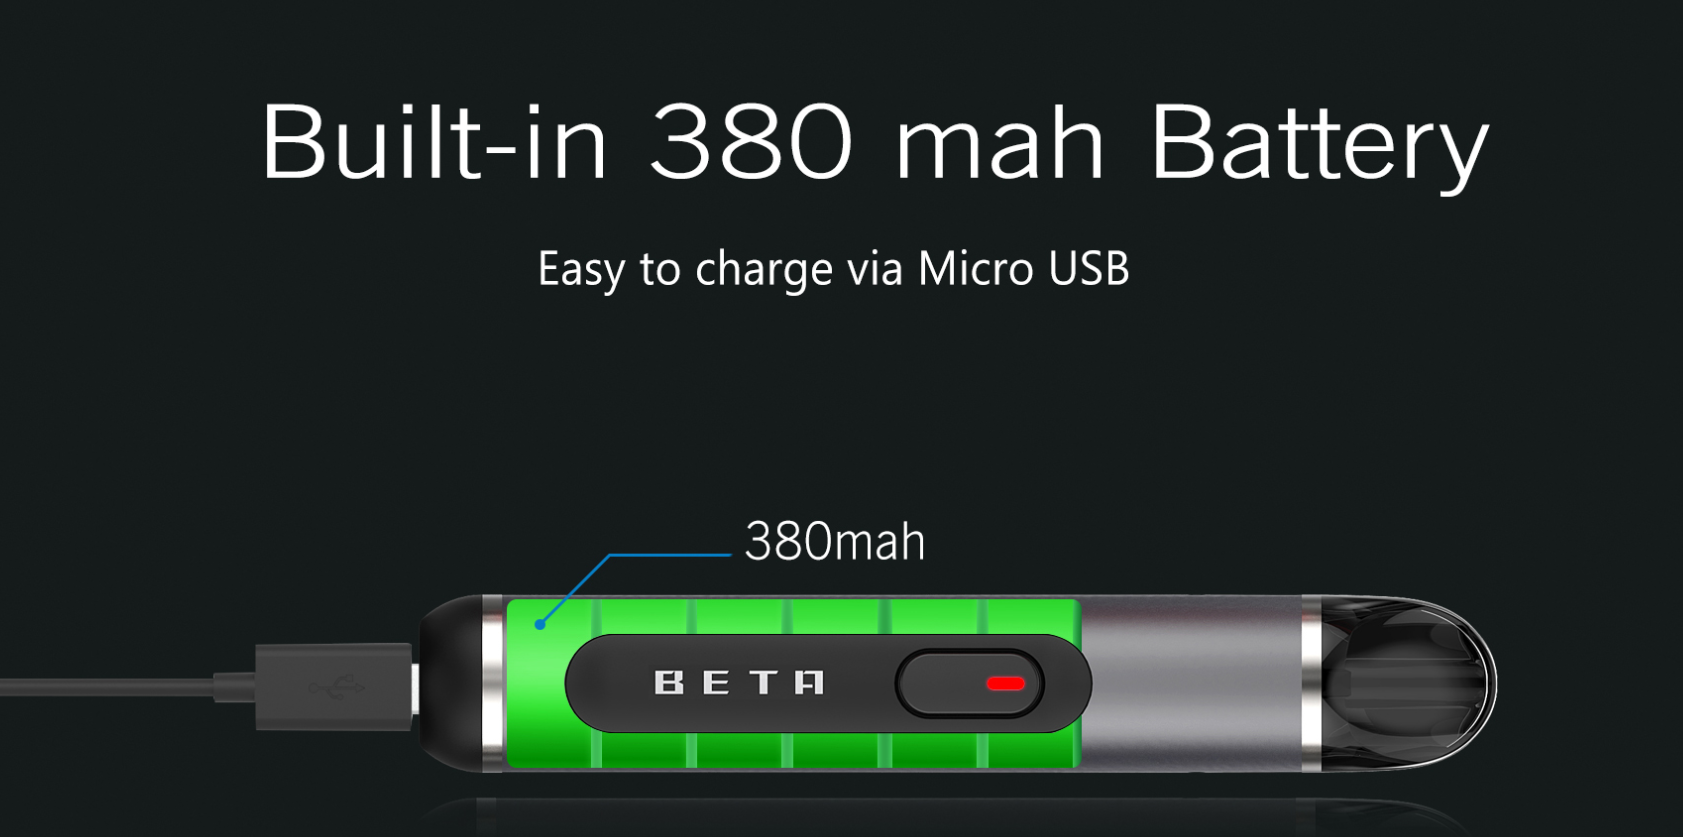 Built-in 380 mah battery